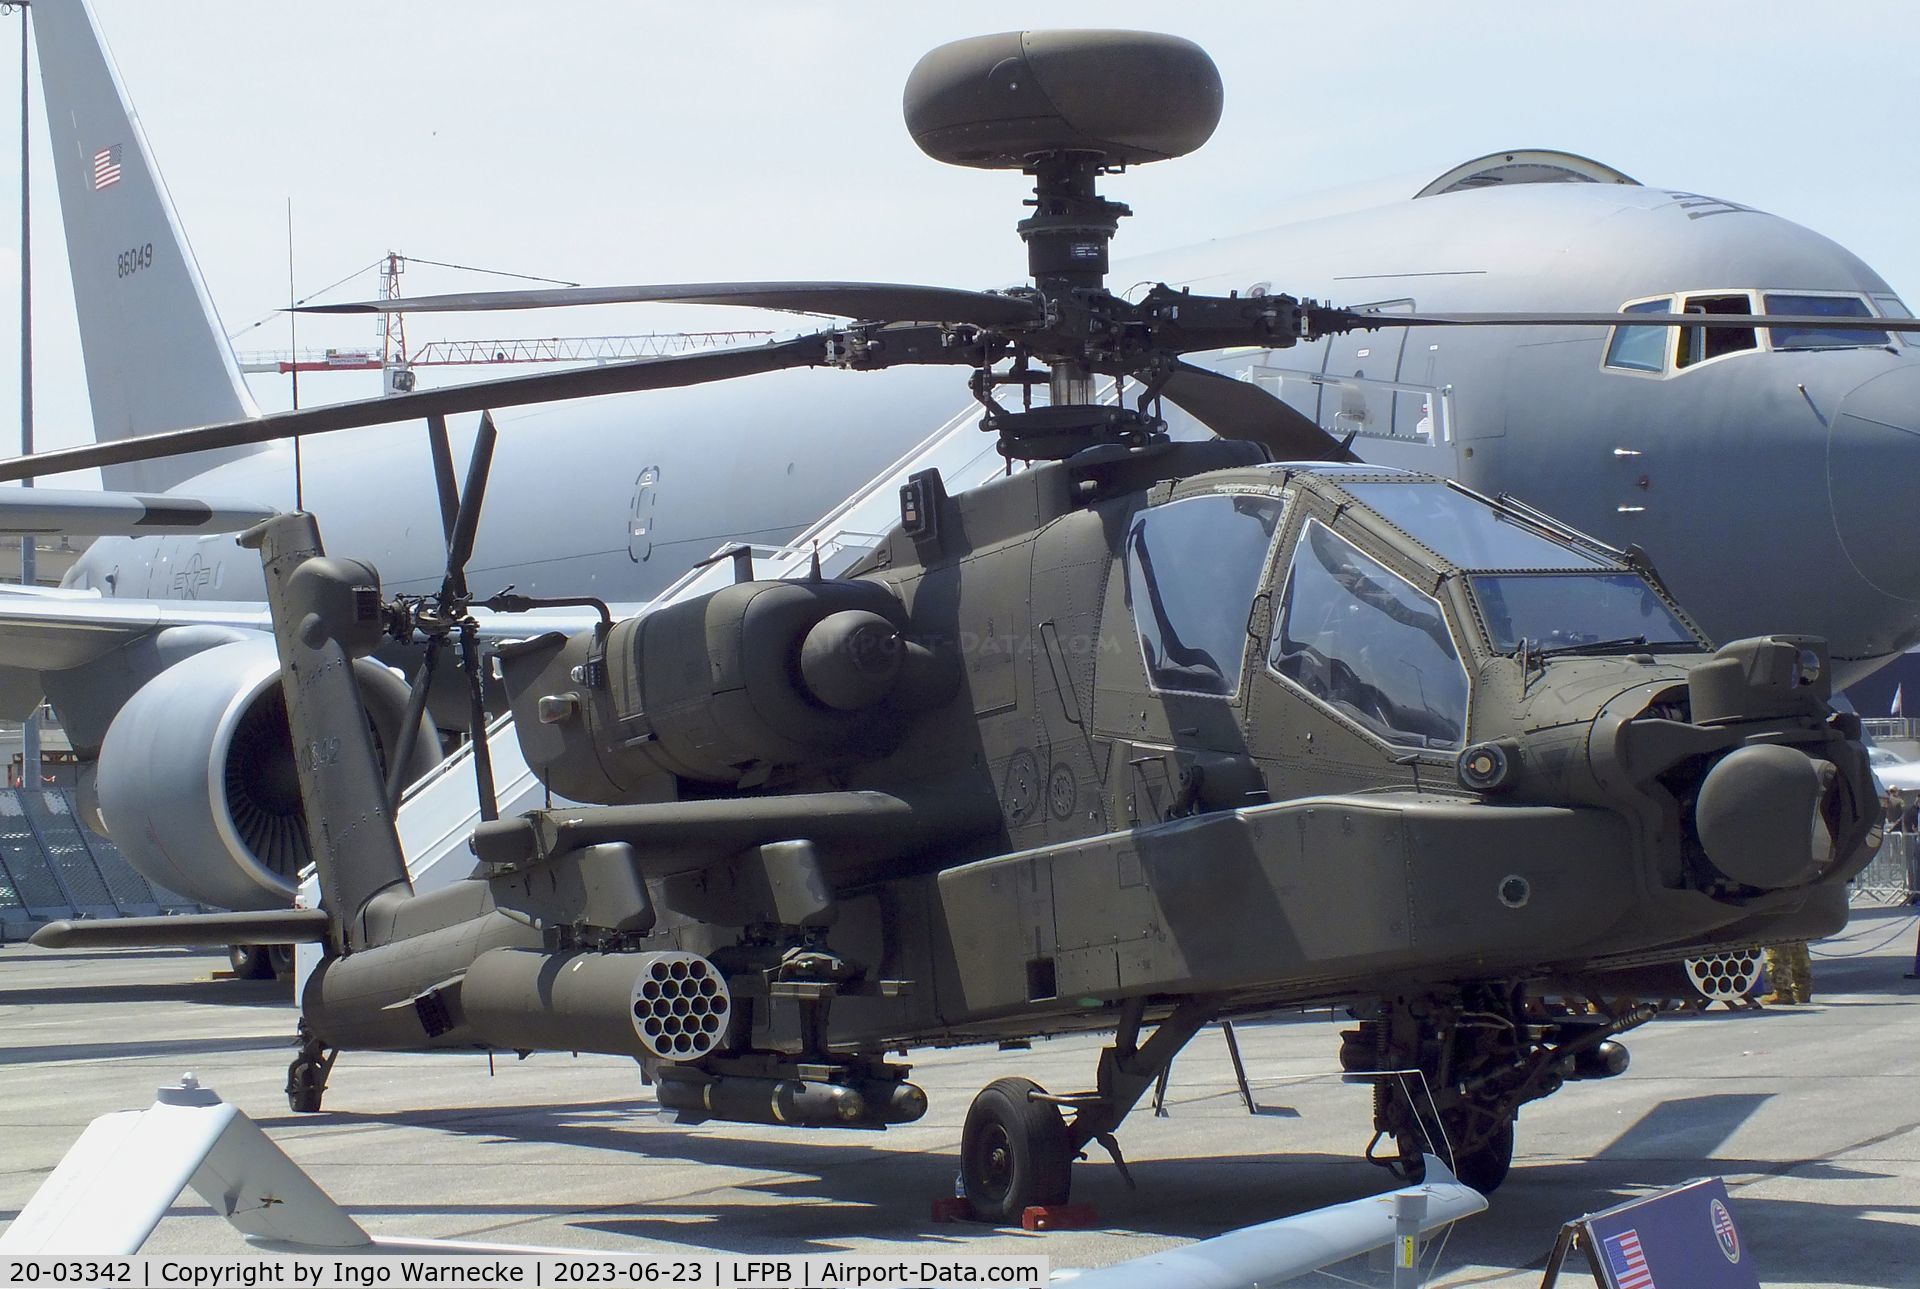 20-03342, 2020 Boeing AH-64E Apache Guardian C/N NM342, Boeing AH-64E Apache Guardian of the US Army at the Aerosalon 2023, Paris